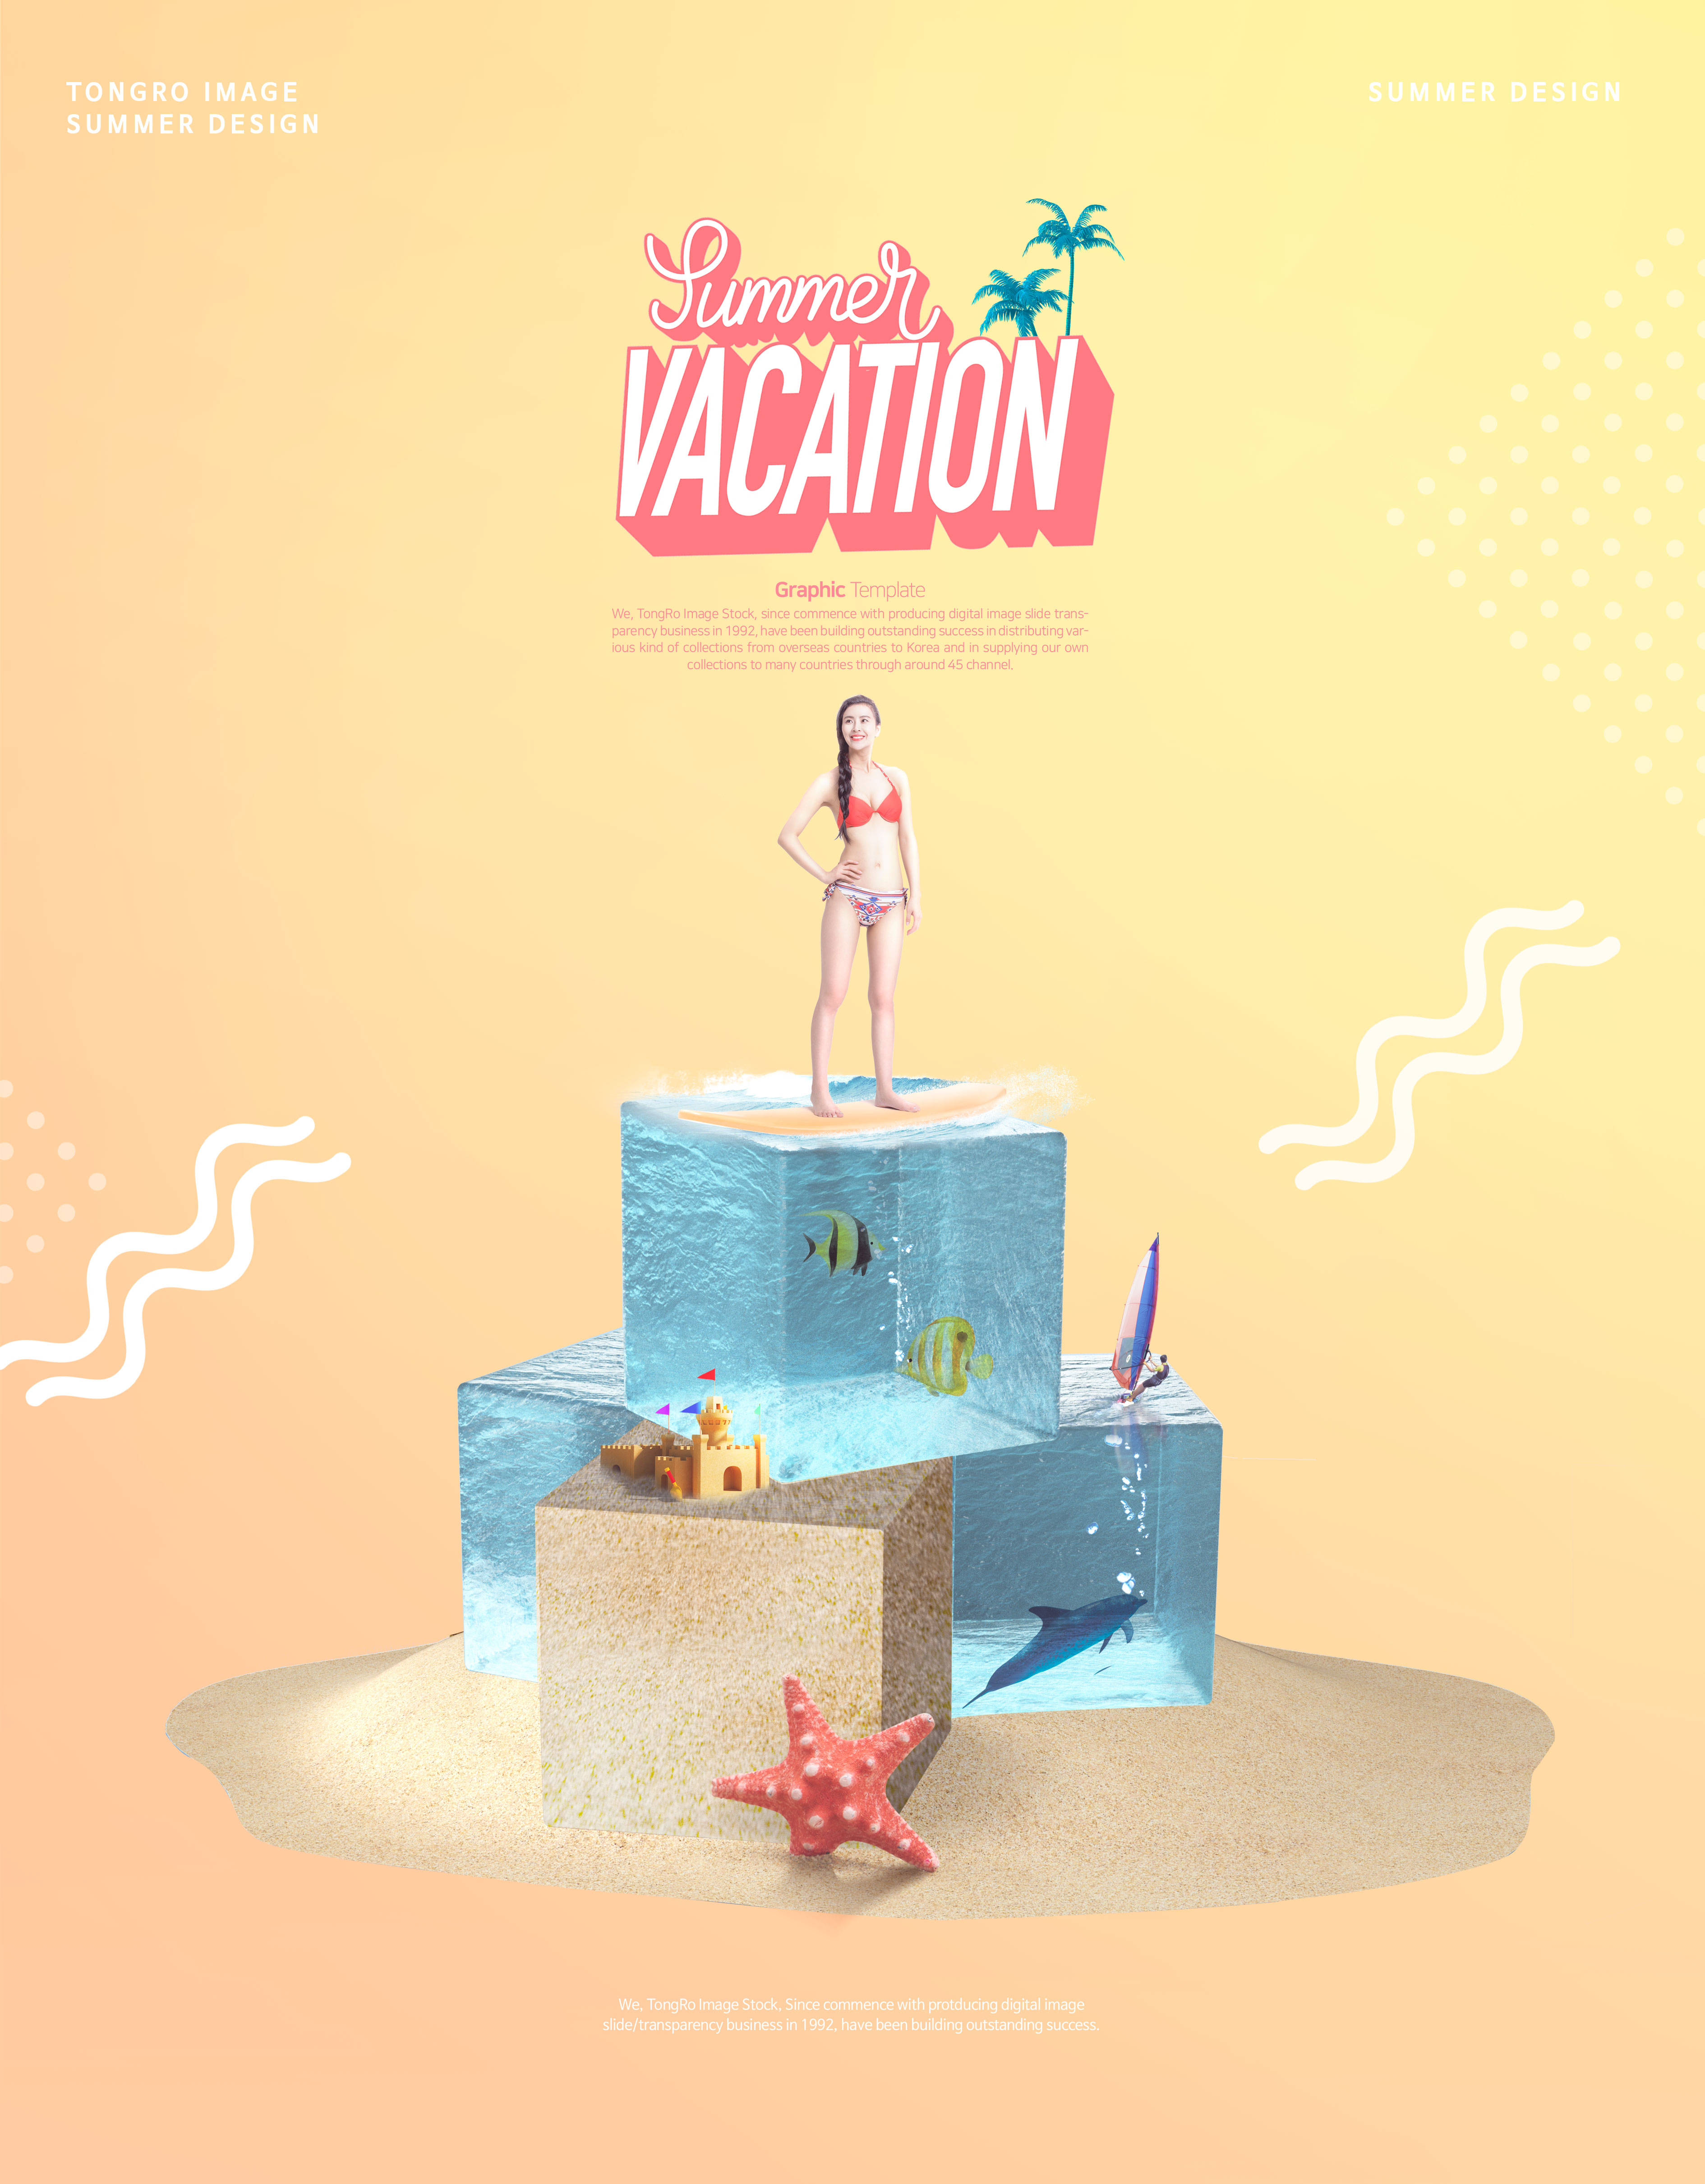 夏季暑假海滩派对活动宣传海报设计模板插图